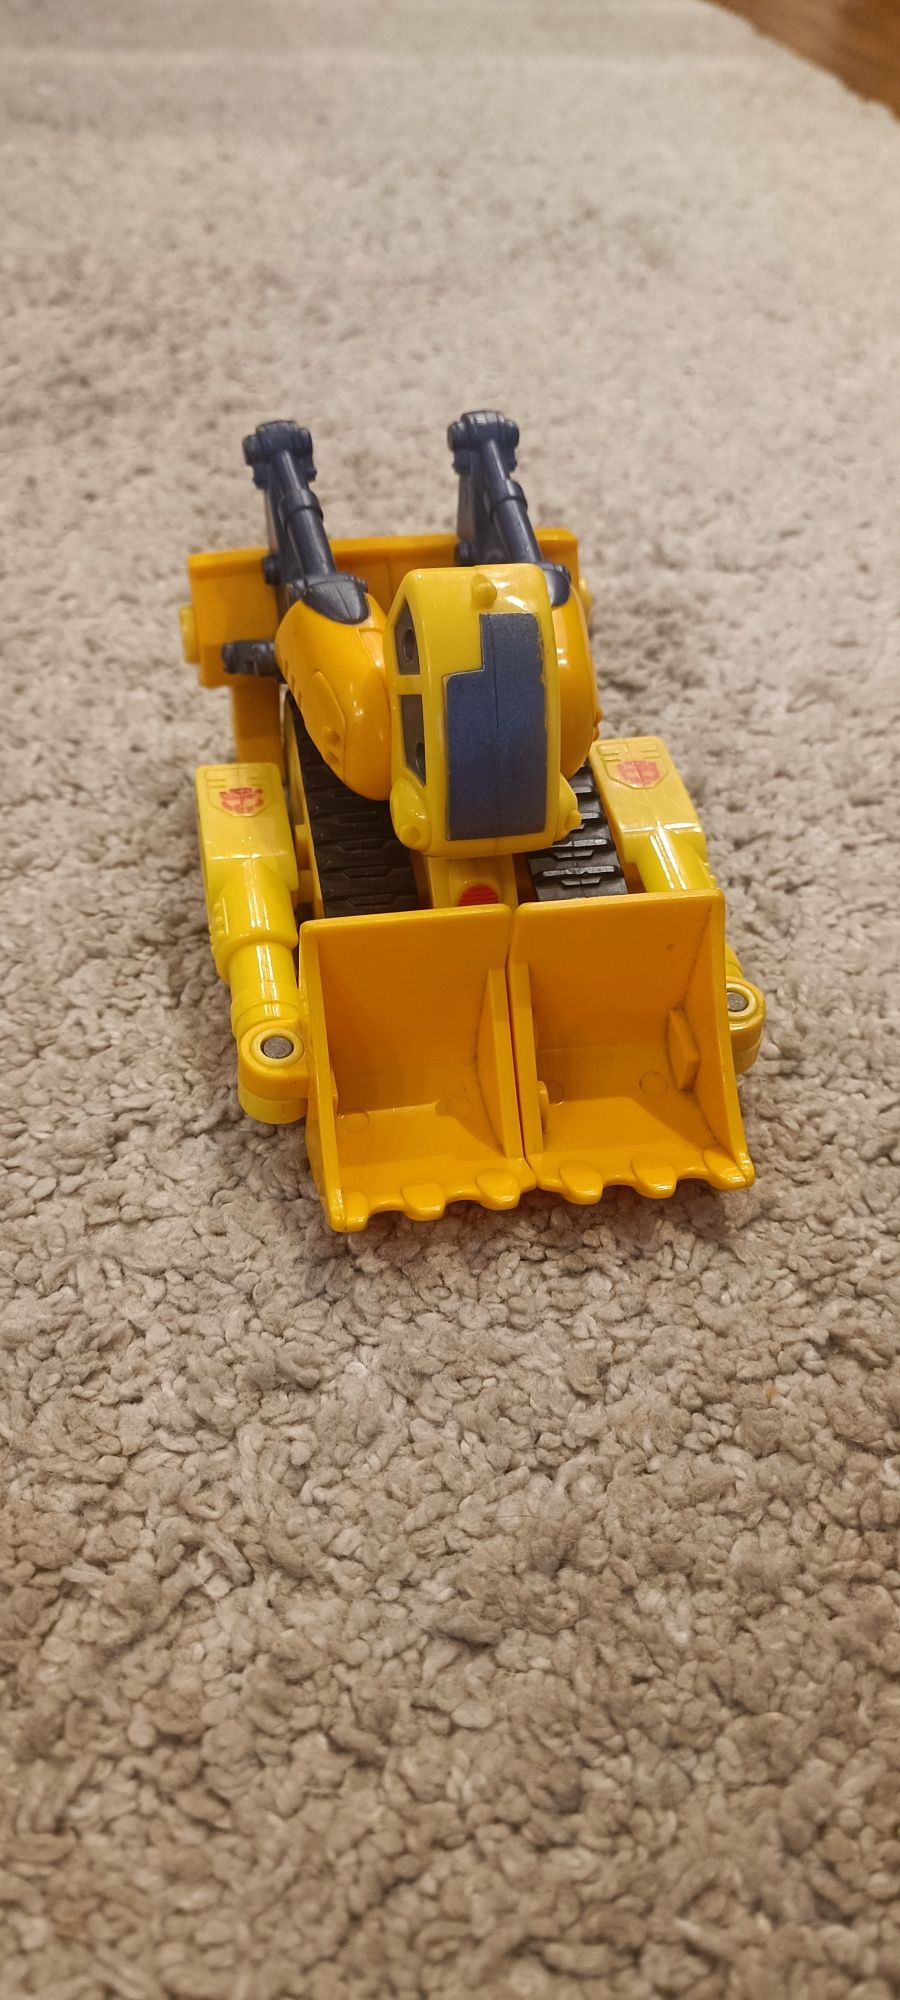 Sprzedam Transformers buldożer